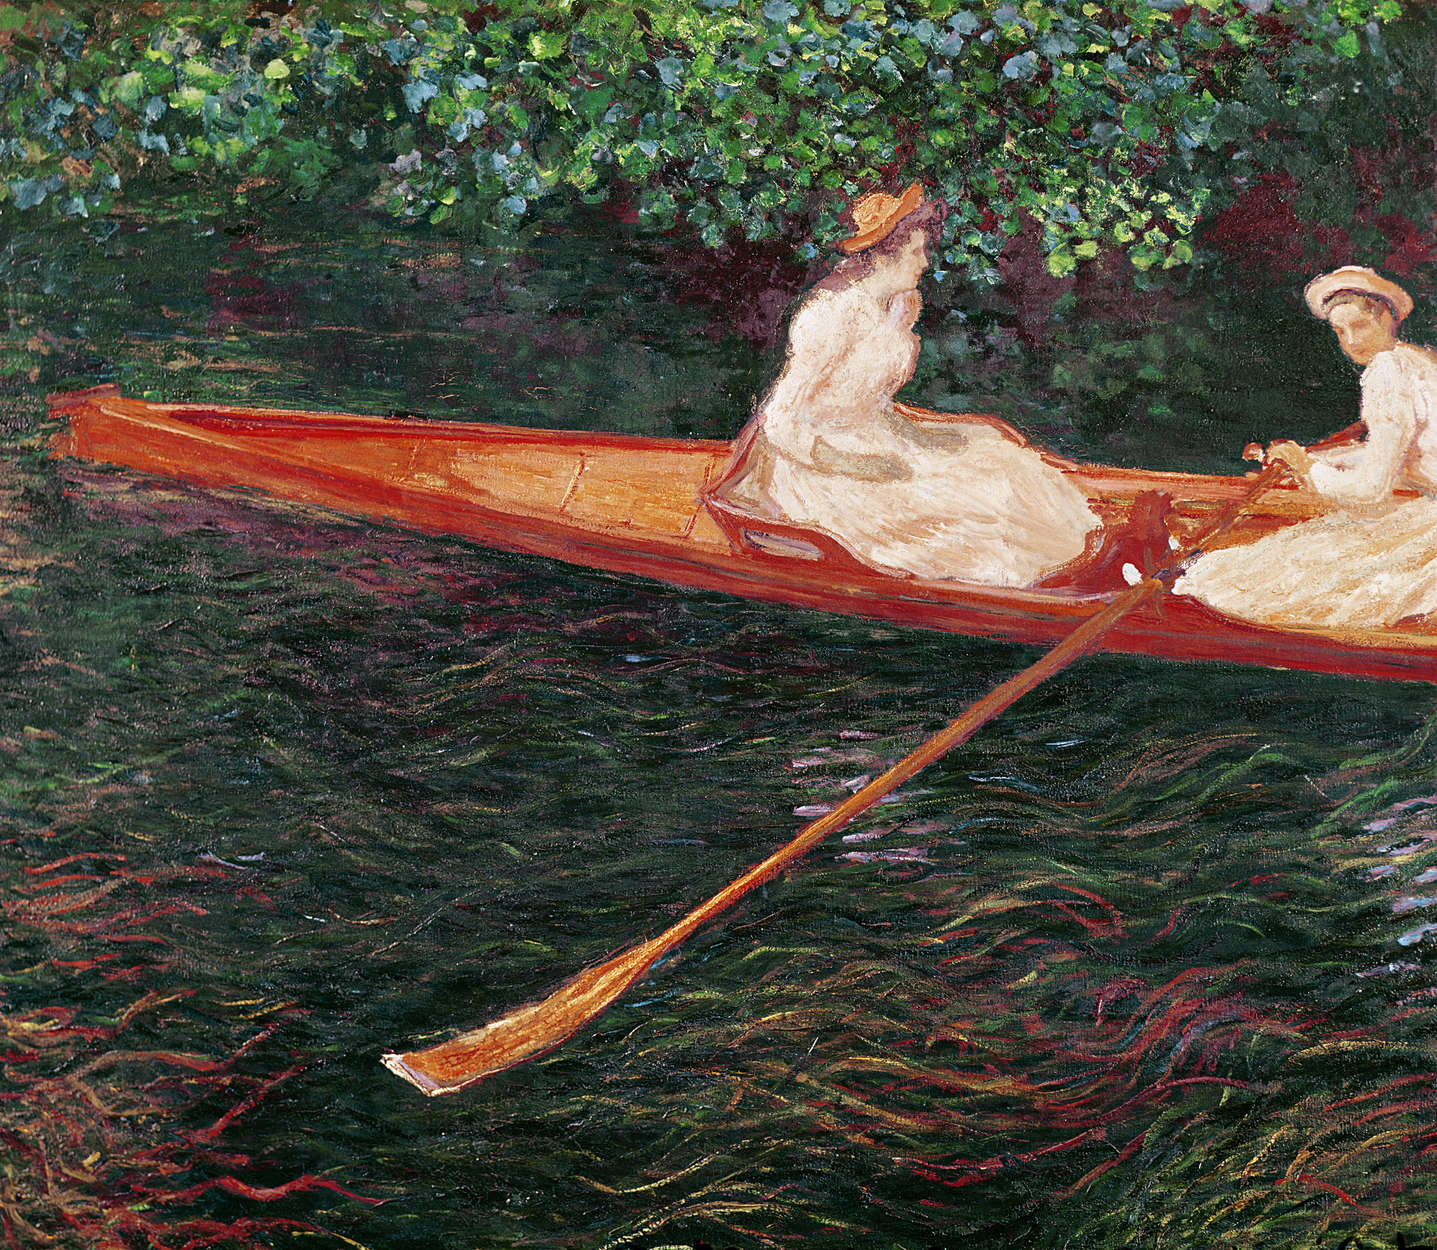             Muurschildering "Varen op de rivier de Epte" door Claude Monet
        